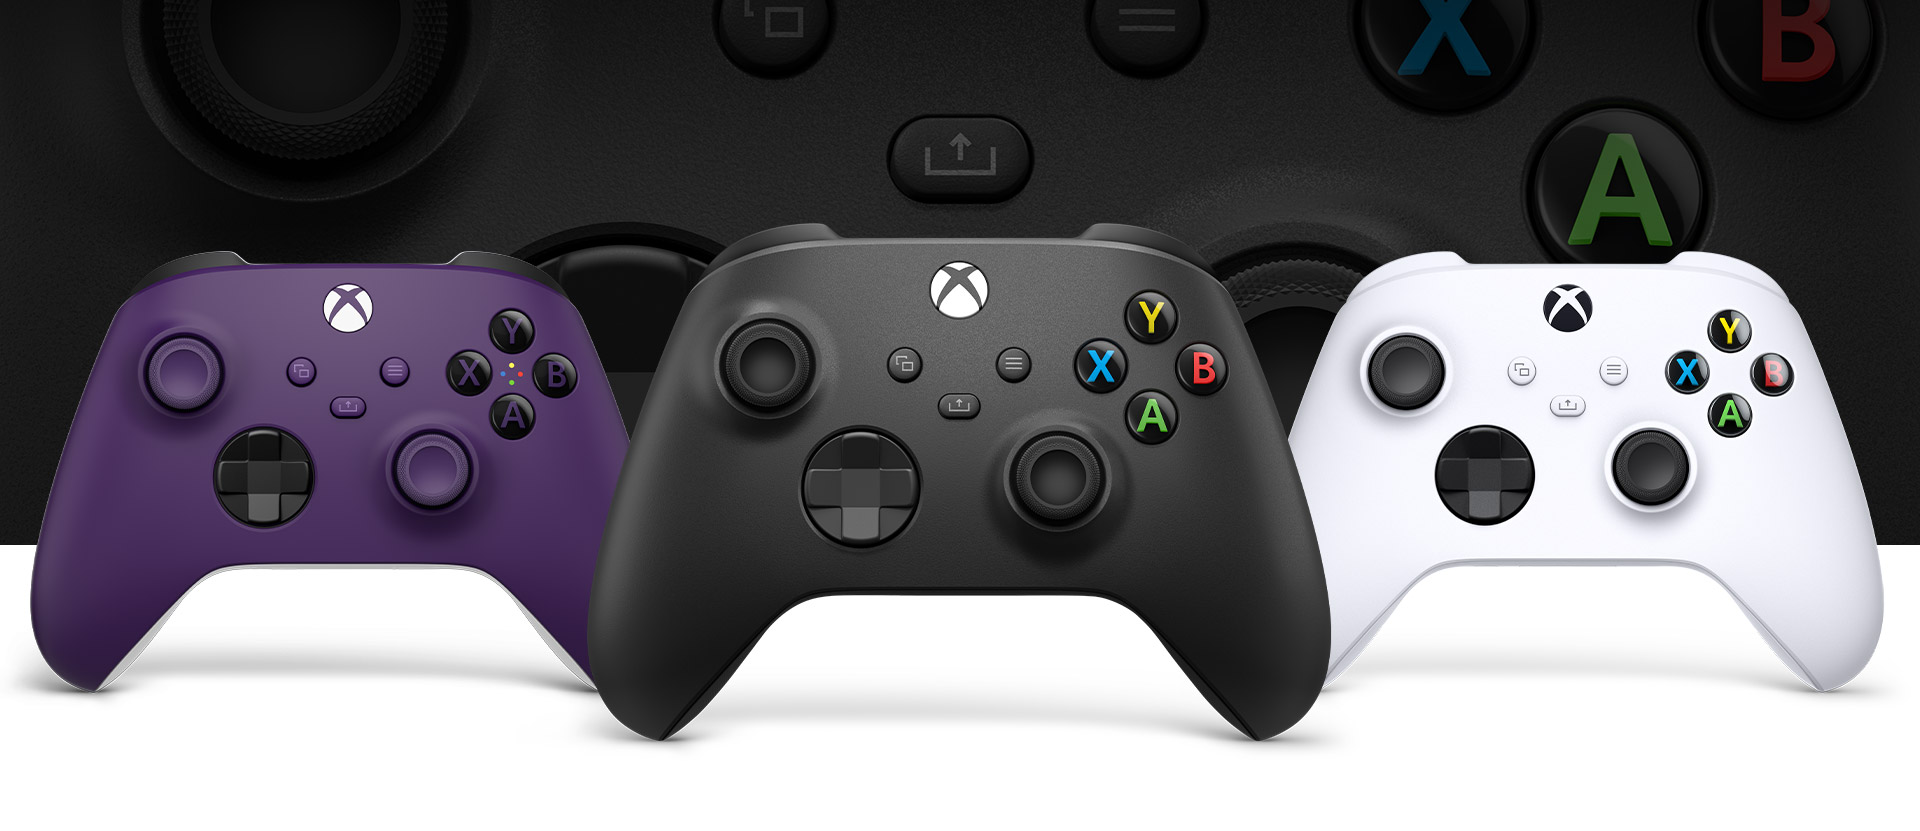 Xbox 碳黑色控制器在前方，左側是紫色控制器，右側是機器白控制器